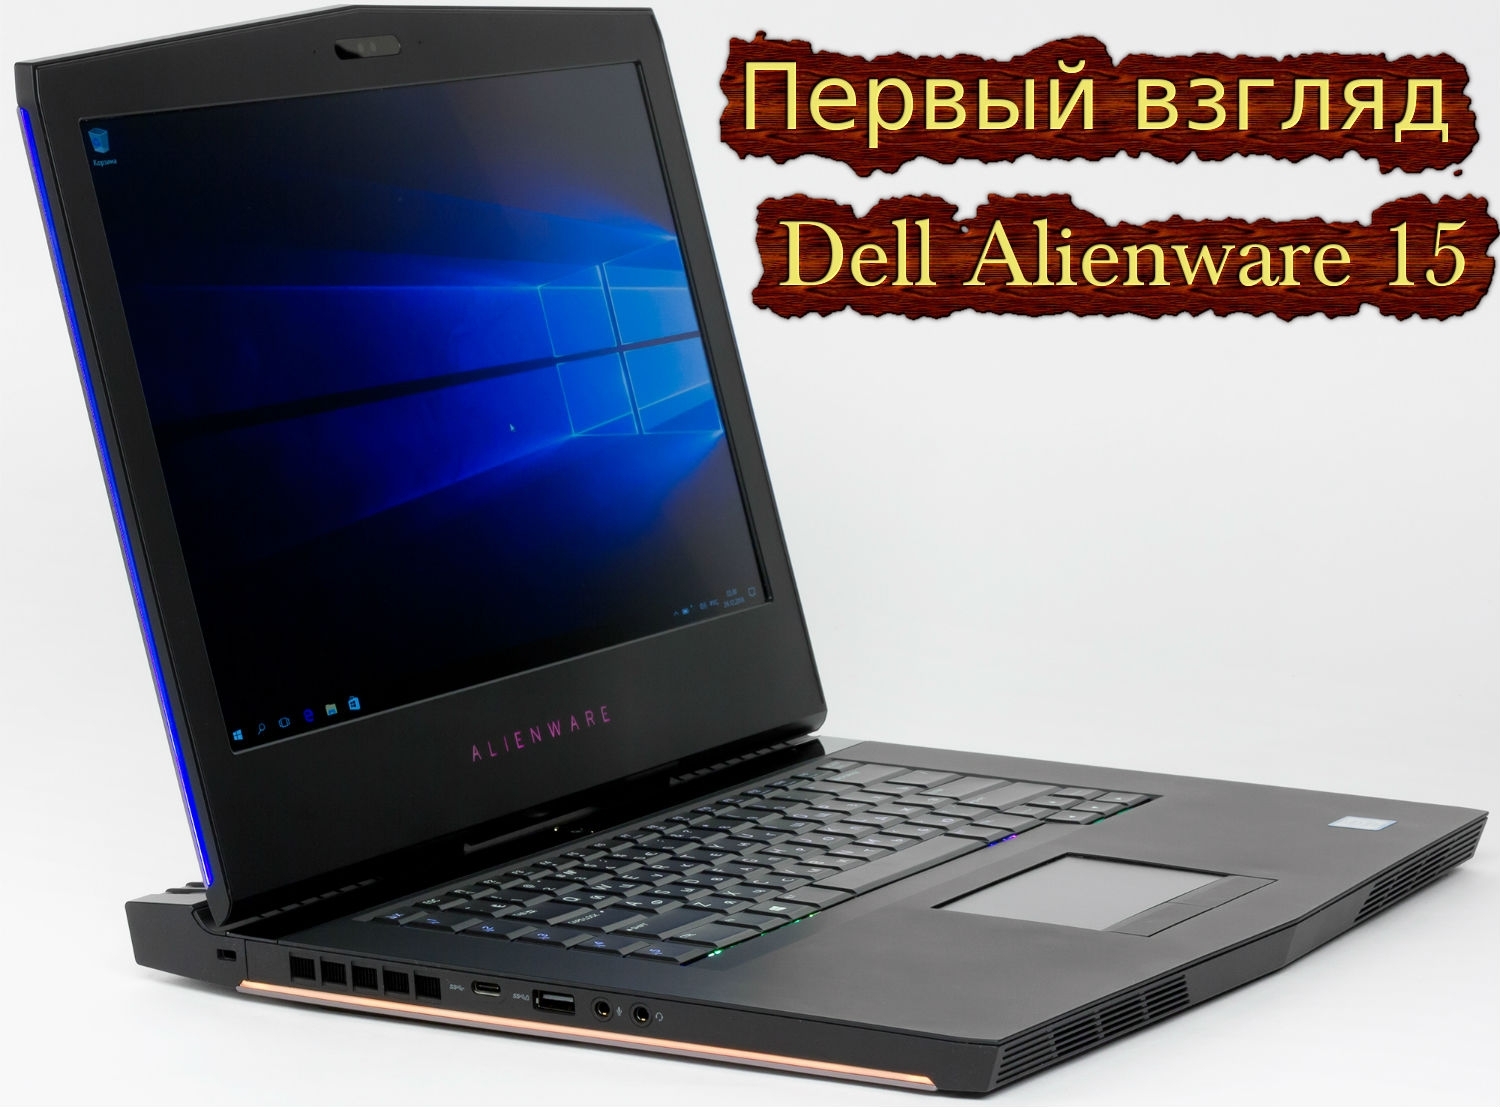 Статья Первый взгляд Dell Alienware 15